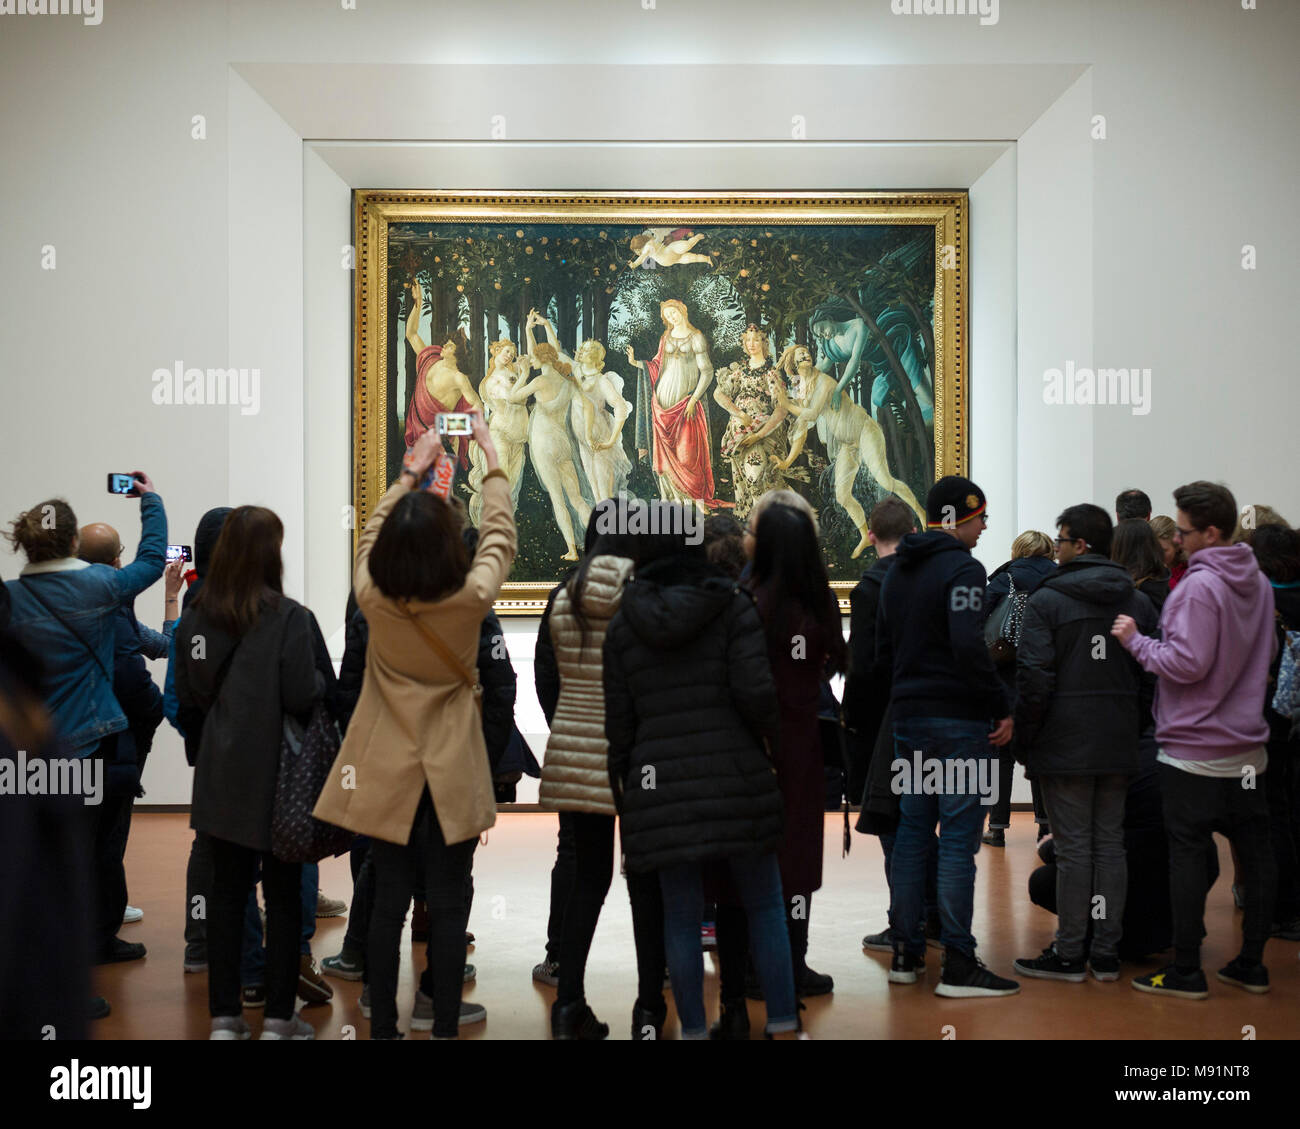 Florencia. Italia. La Galería de los Uffizi. Los visitantes ver la alegoría de la primavera pintura de Sandro Botticelli (c. 1482). La Galleria degli Uffizi. Foto de stock